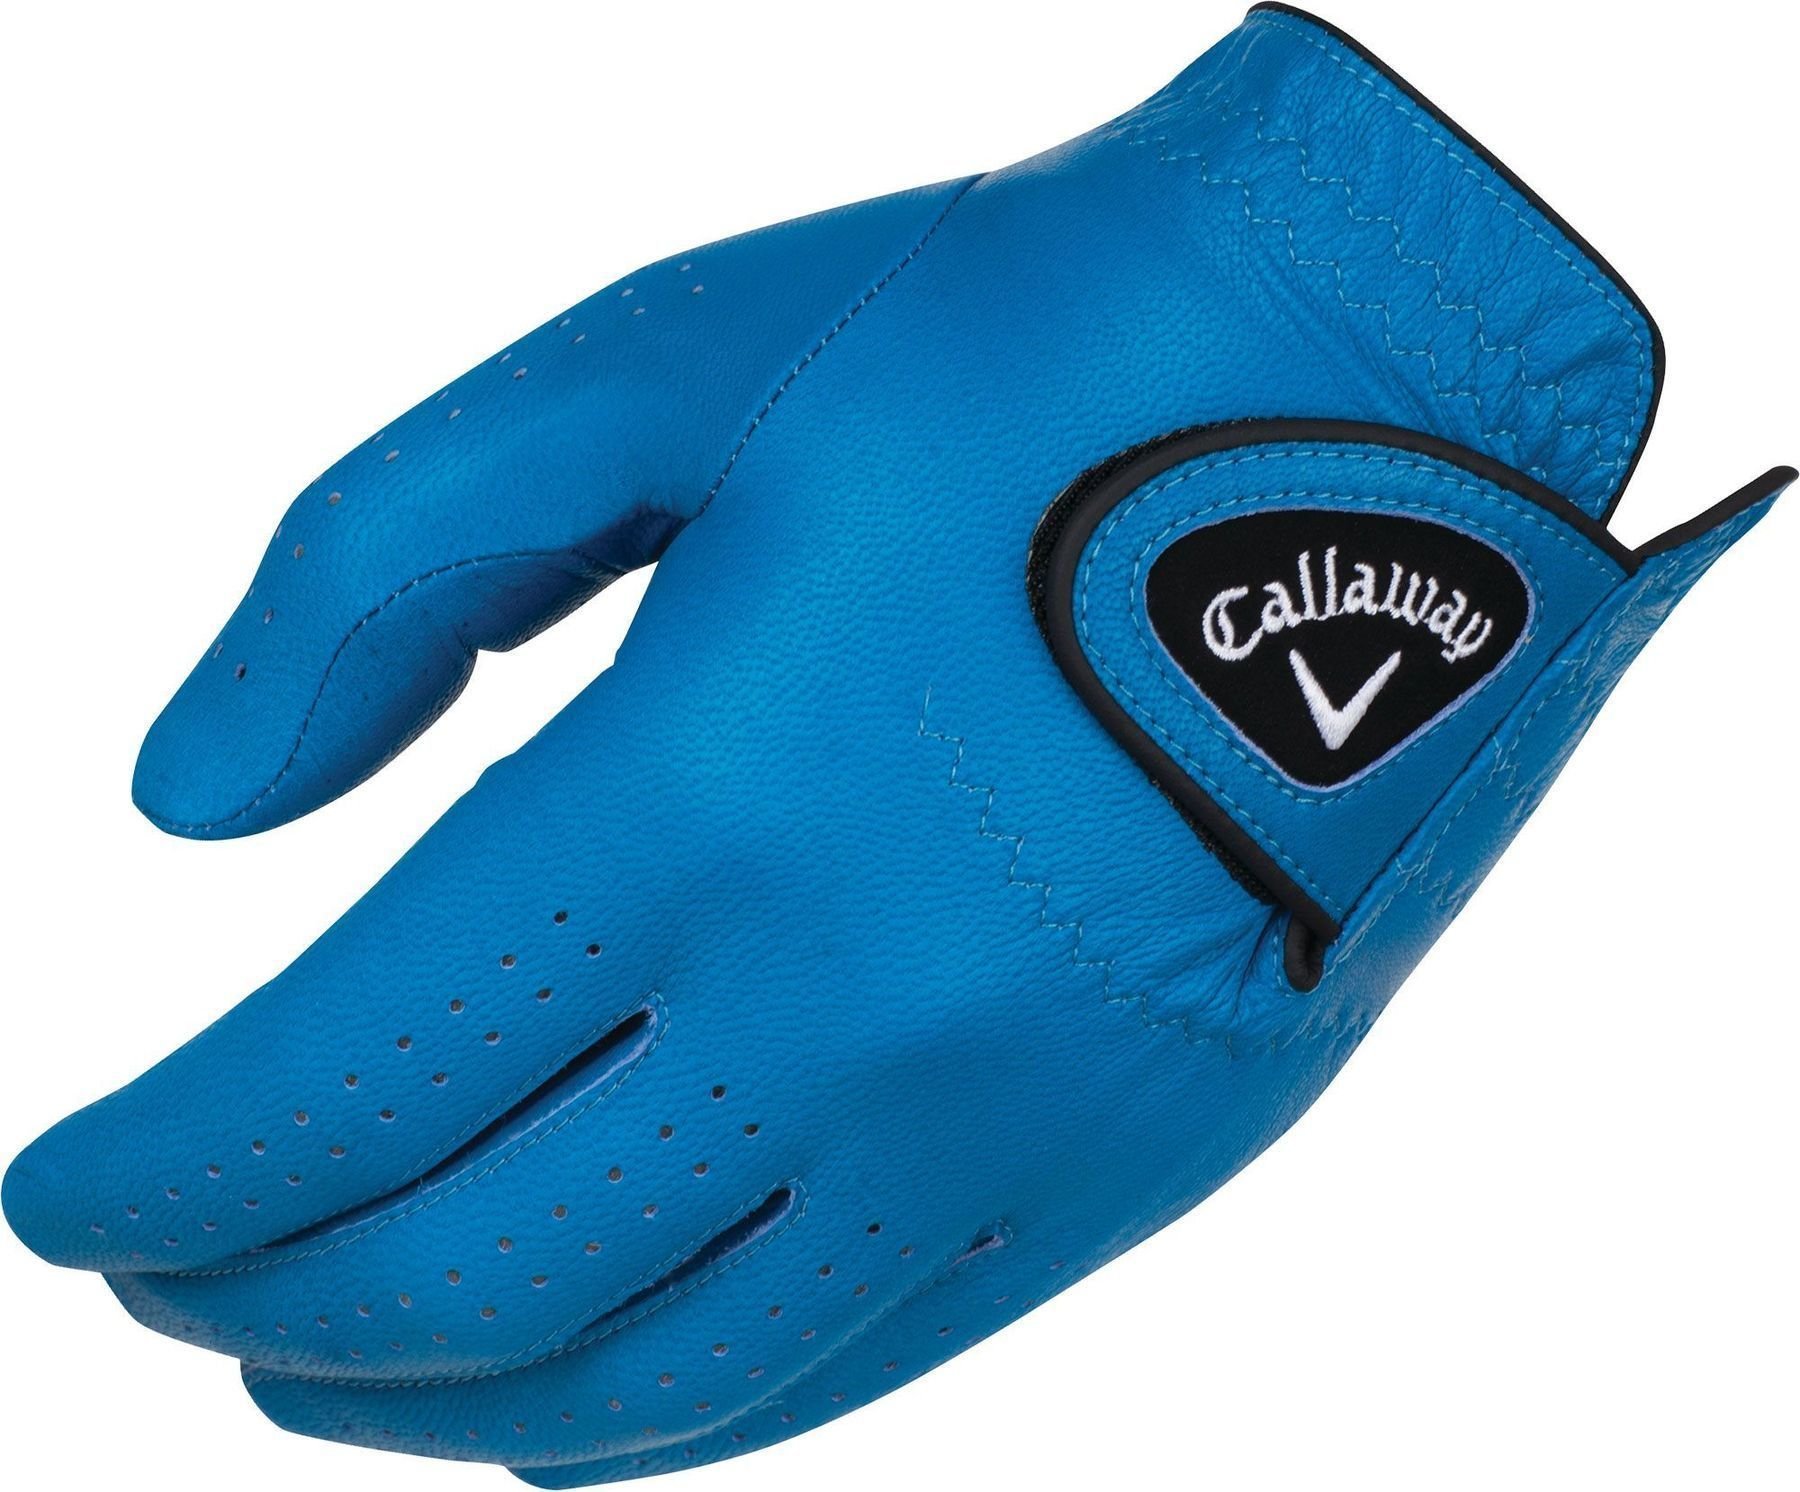 Γάντια Callaway Opti Color Mens Golf Glove 2017 LH Blue L